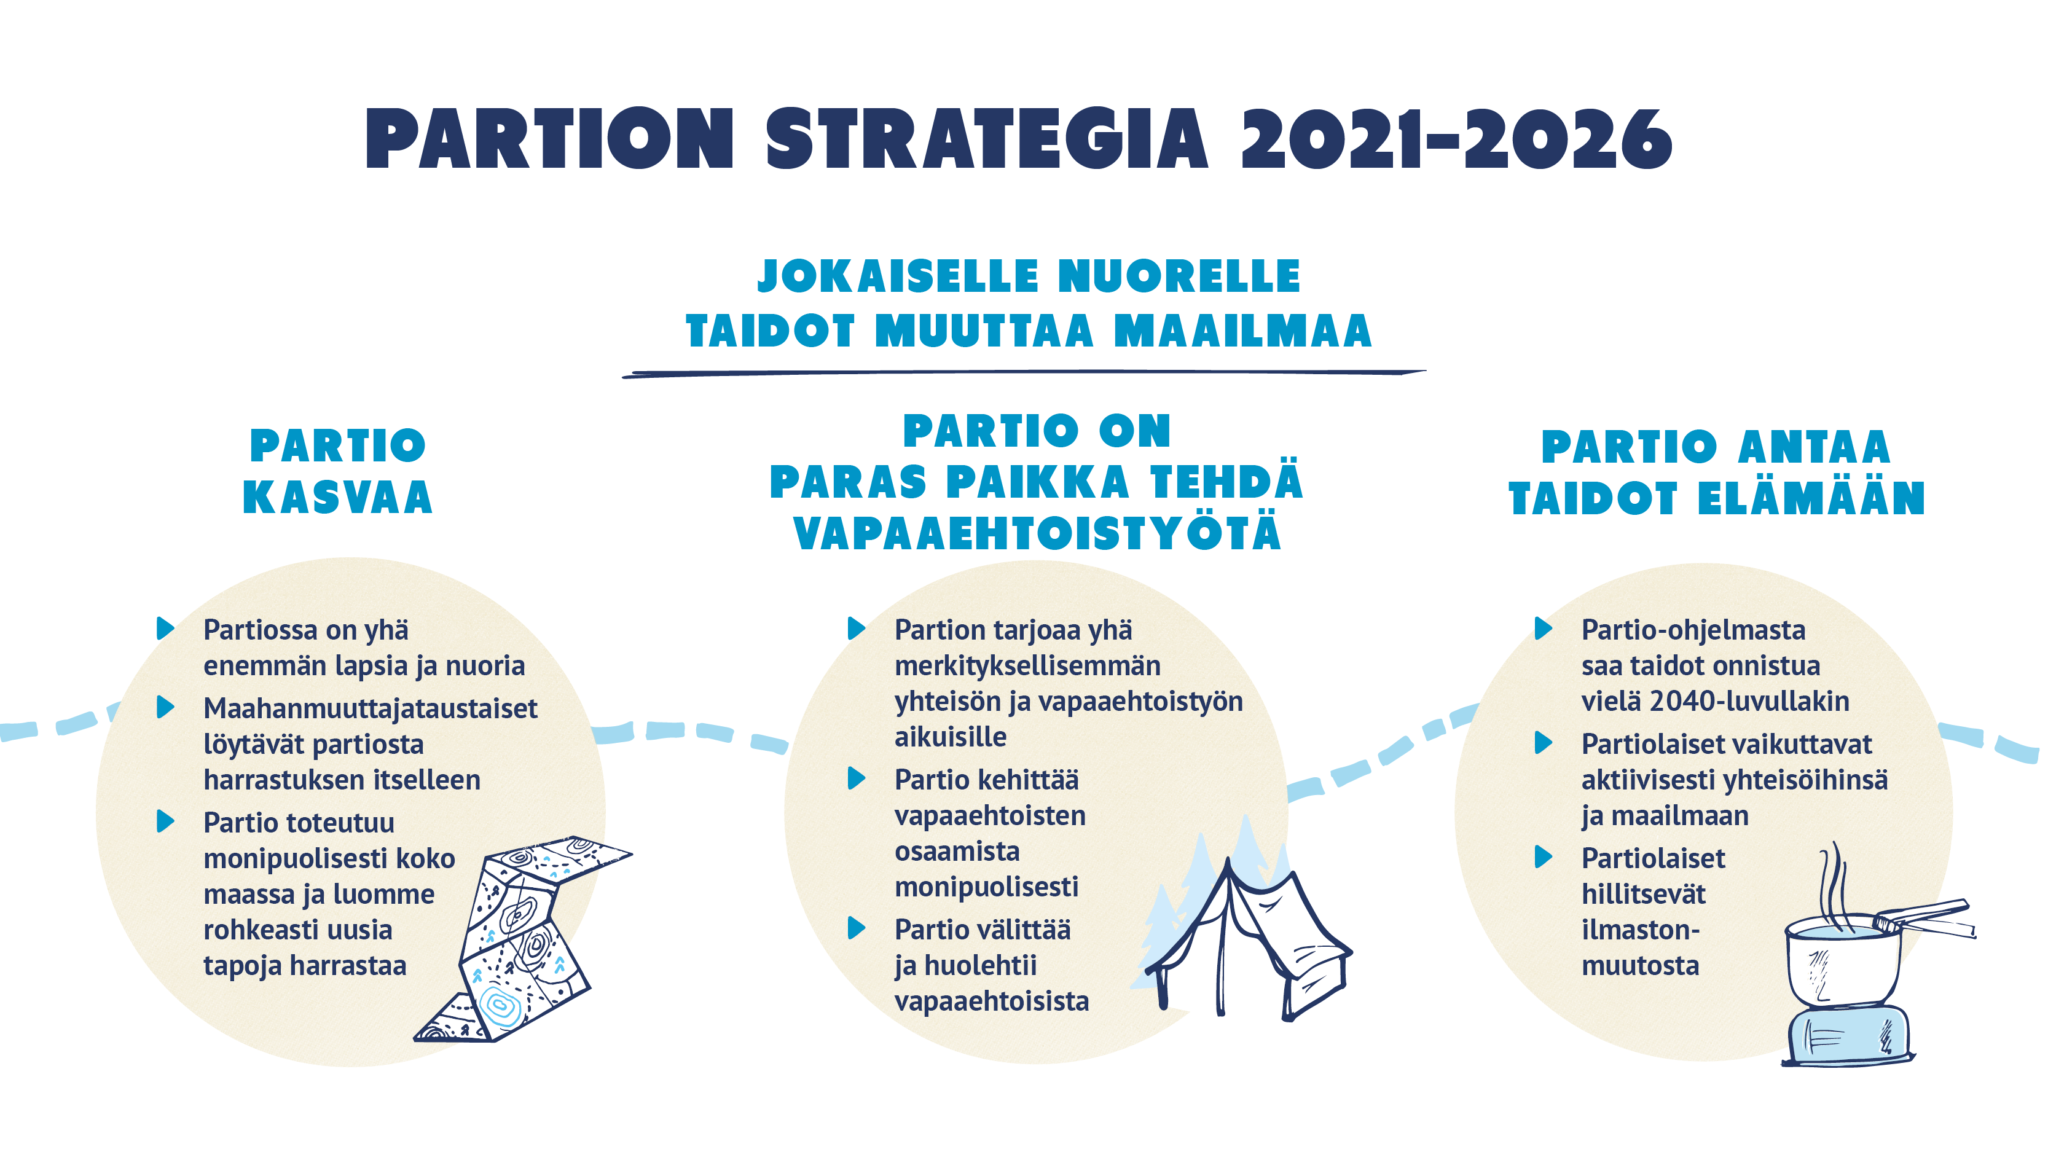 Partion strategian kolmea pääkohtaa kuvaava infograafi.